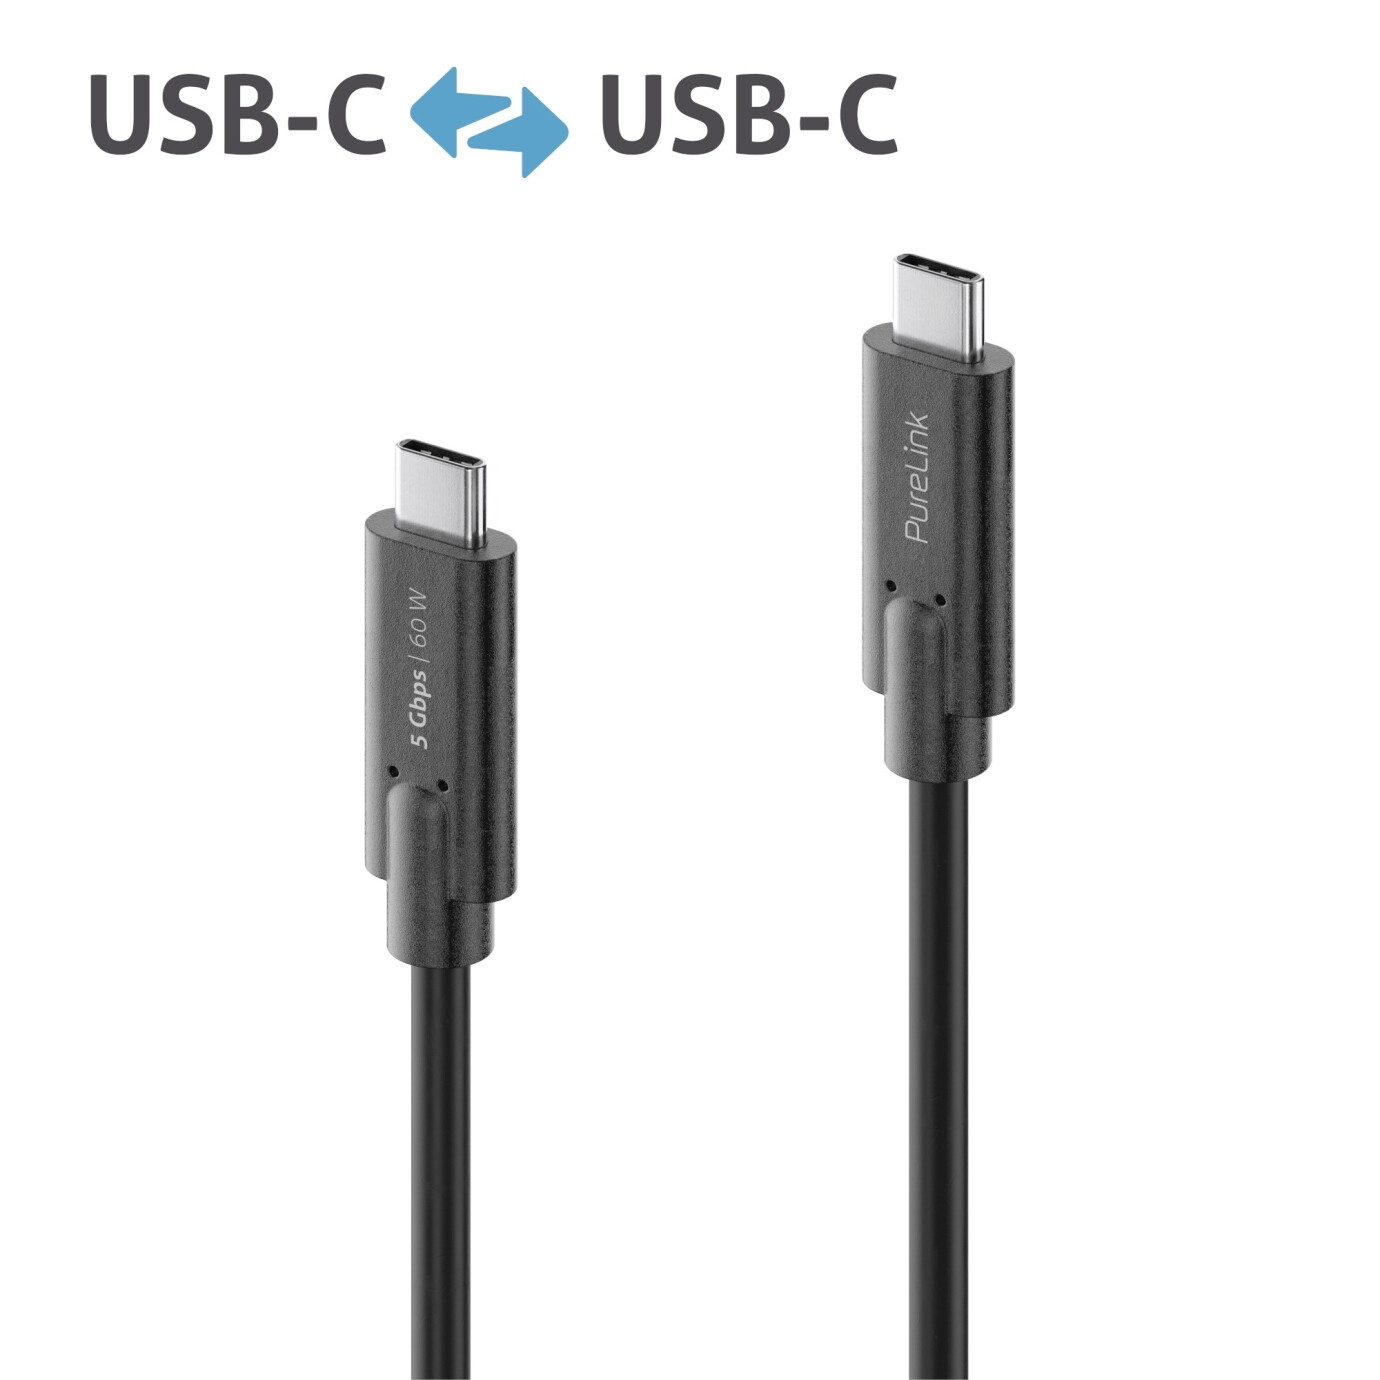 Purelink IS2501-005 USB-C auf USB-C Kabel 0,5m schwarz